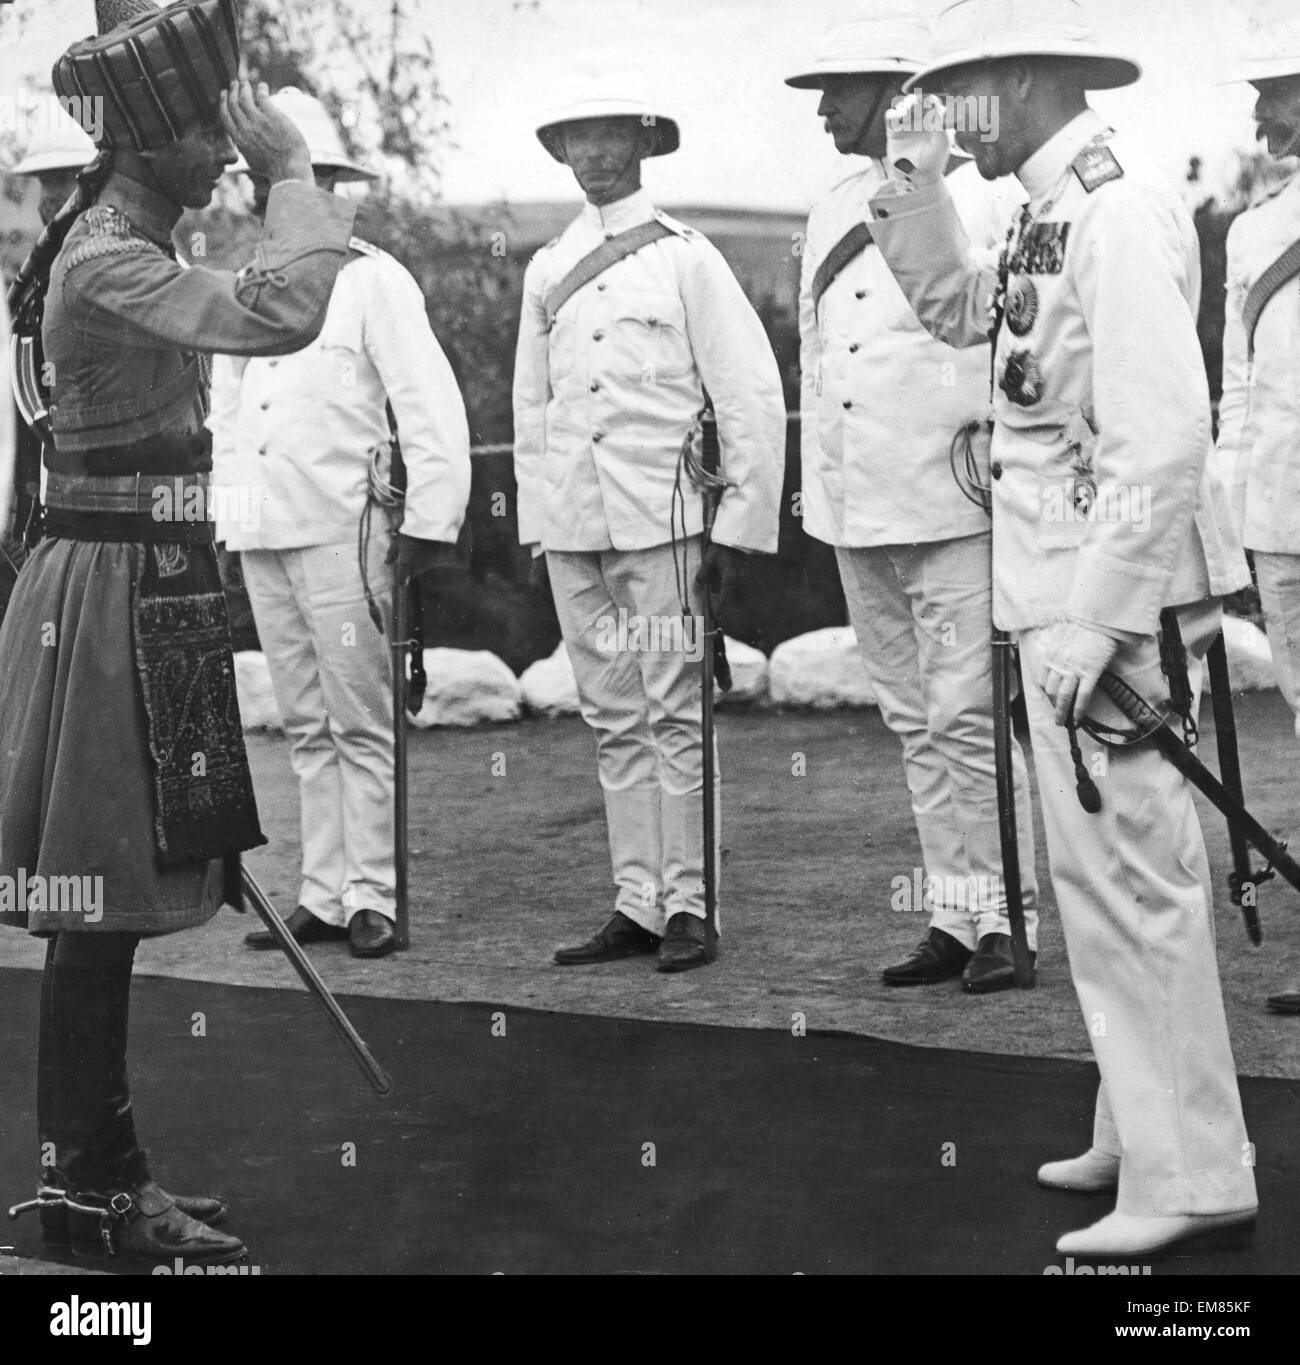 Le roi George V de retourner le salut d'un fonctionnaire indien à Aden . Le Roi est en route pour l'Inde pour son couronnement Durbar. 12 Novembre 1911 Banque D'Images